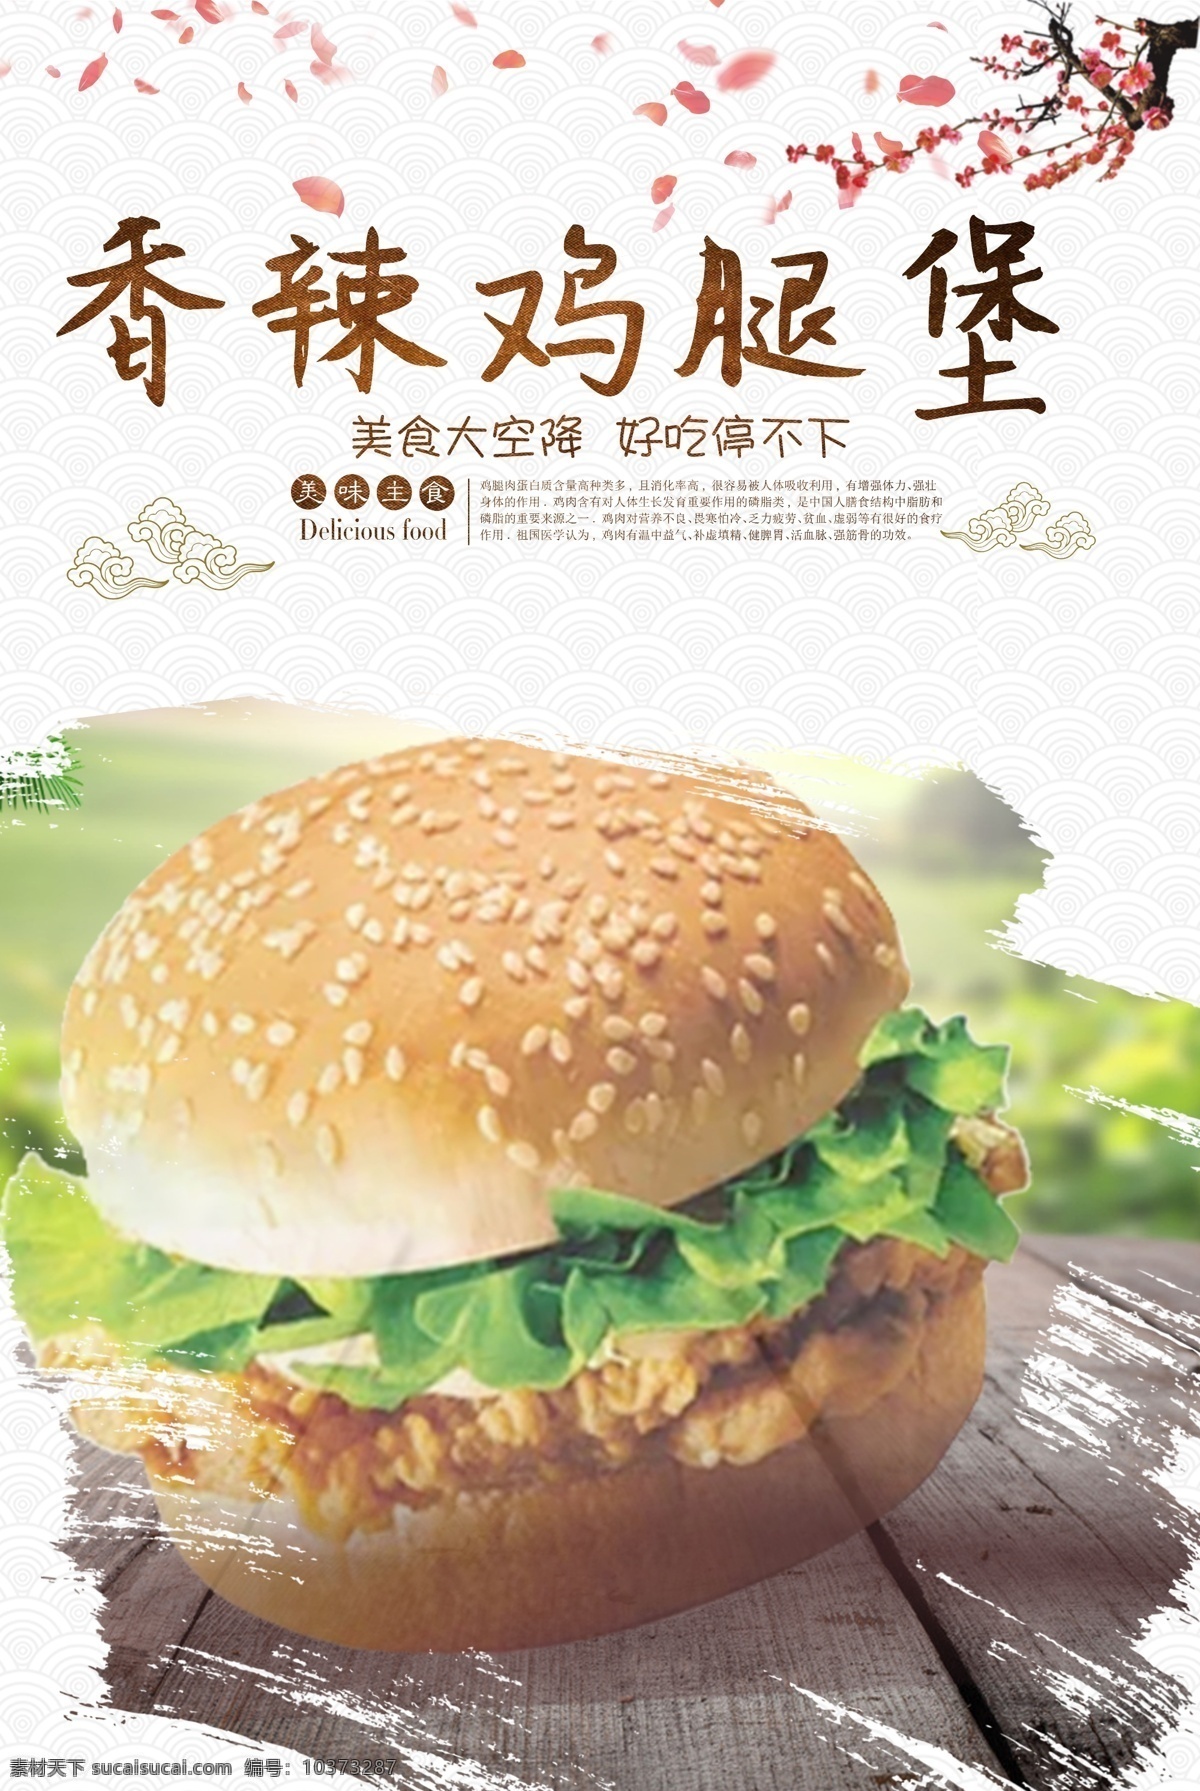 鸡腿 堡 美食 宣传海报 香辣鸡腿堡 海报 汉堡 美食海报 促销海报 美食促销 美食宣传